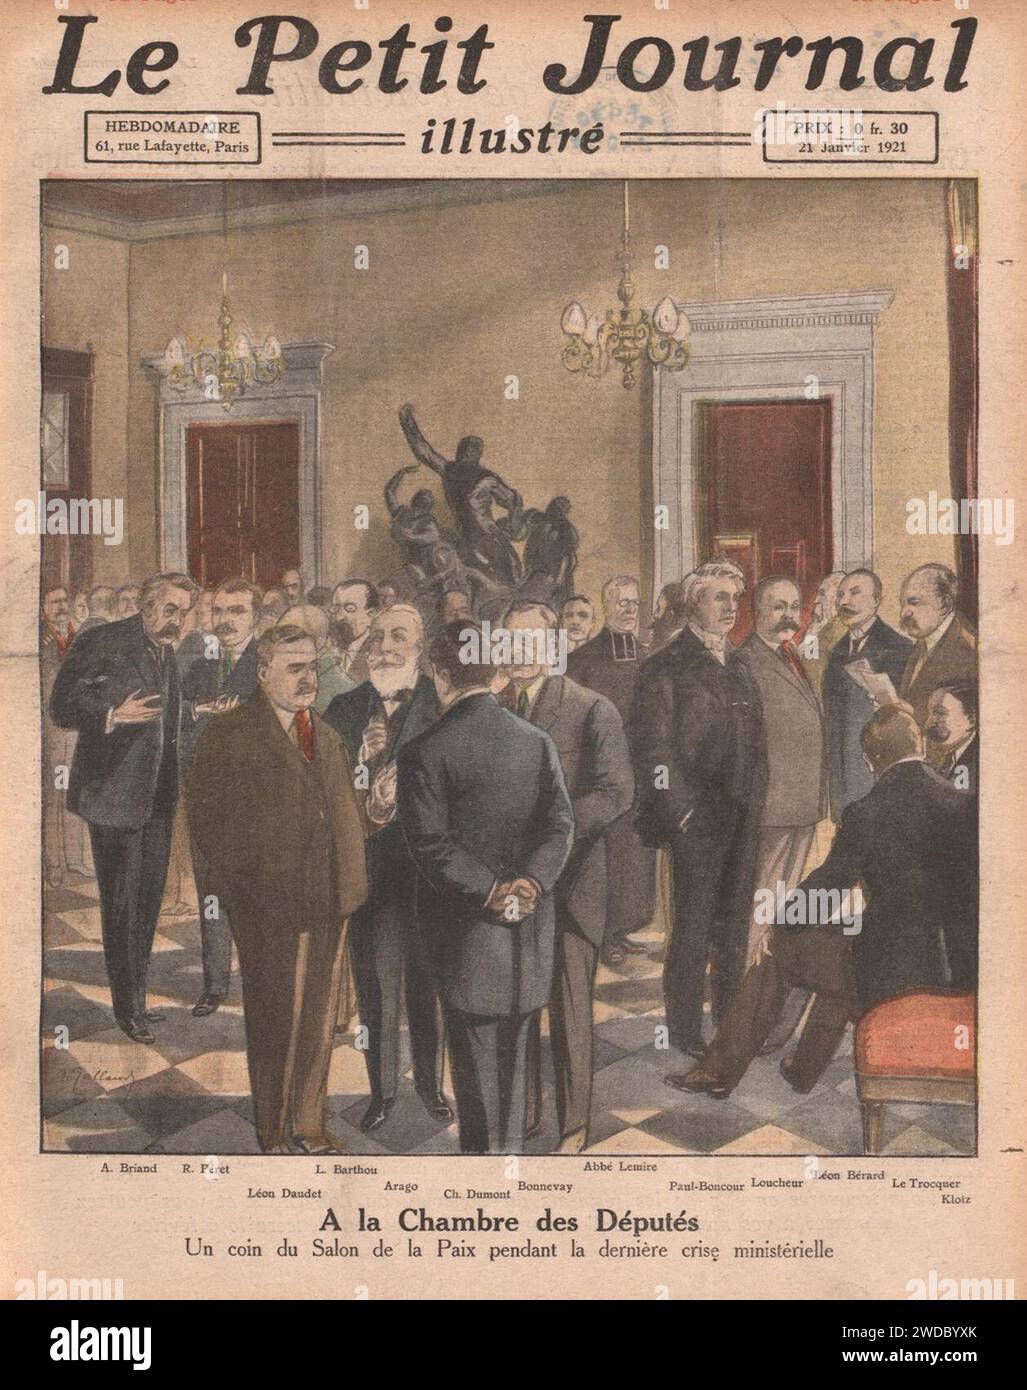 19210121 Léon Daudet dans Le Petit journal illustré. Stock Photo